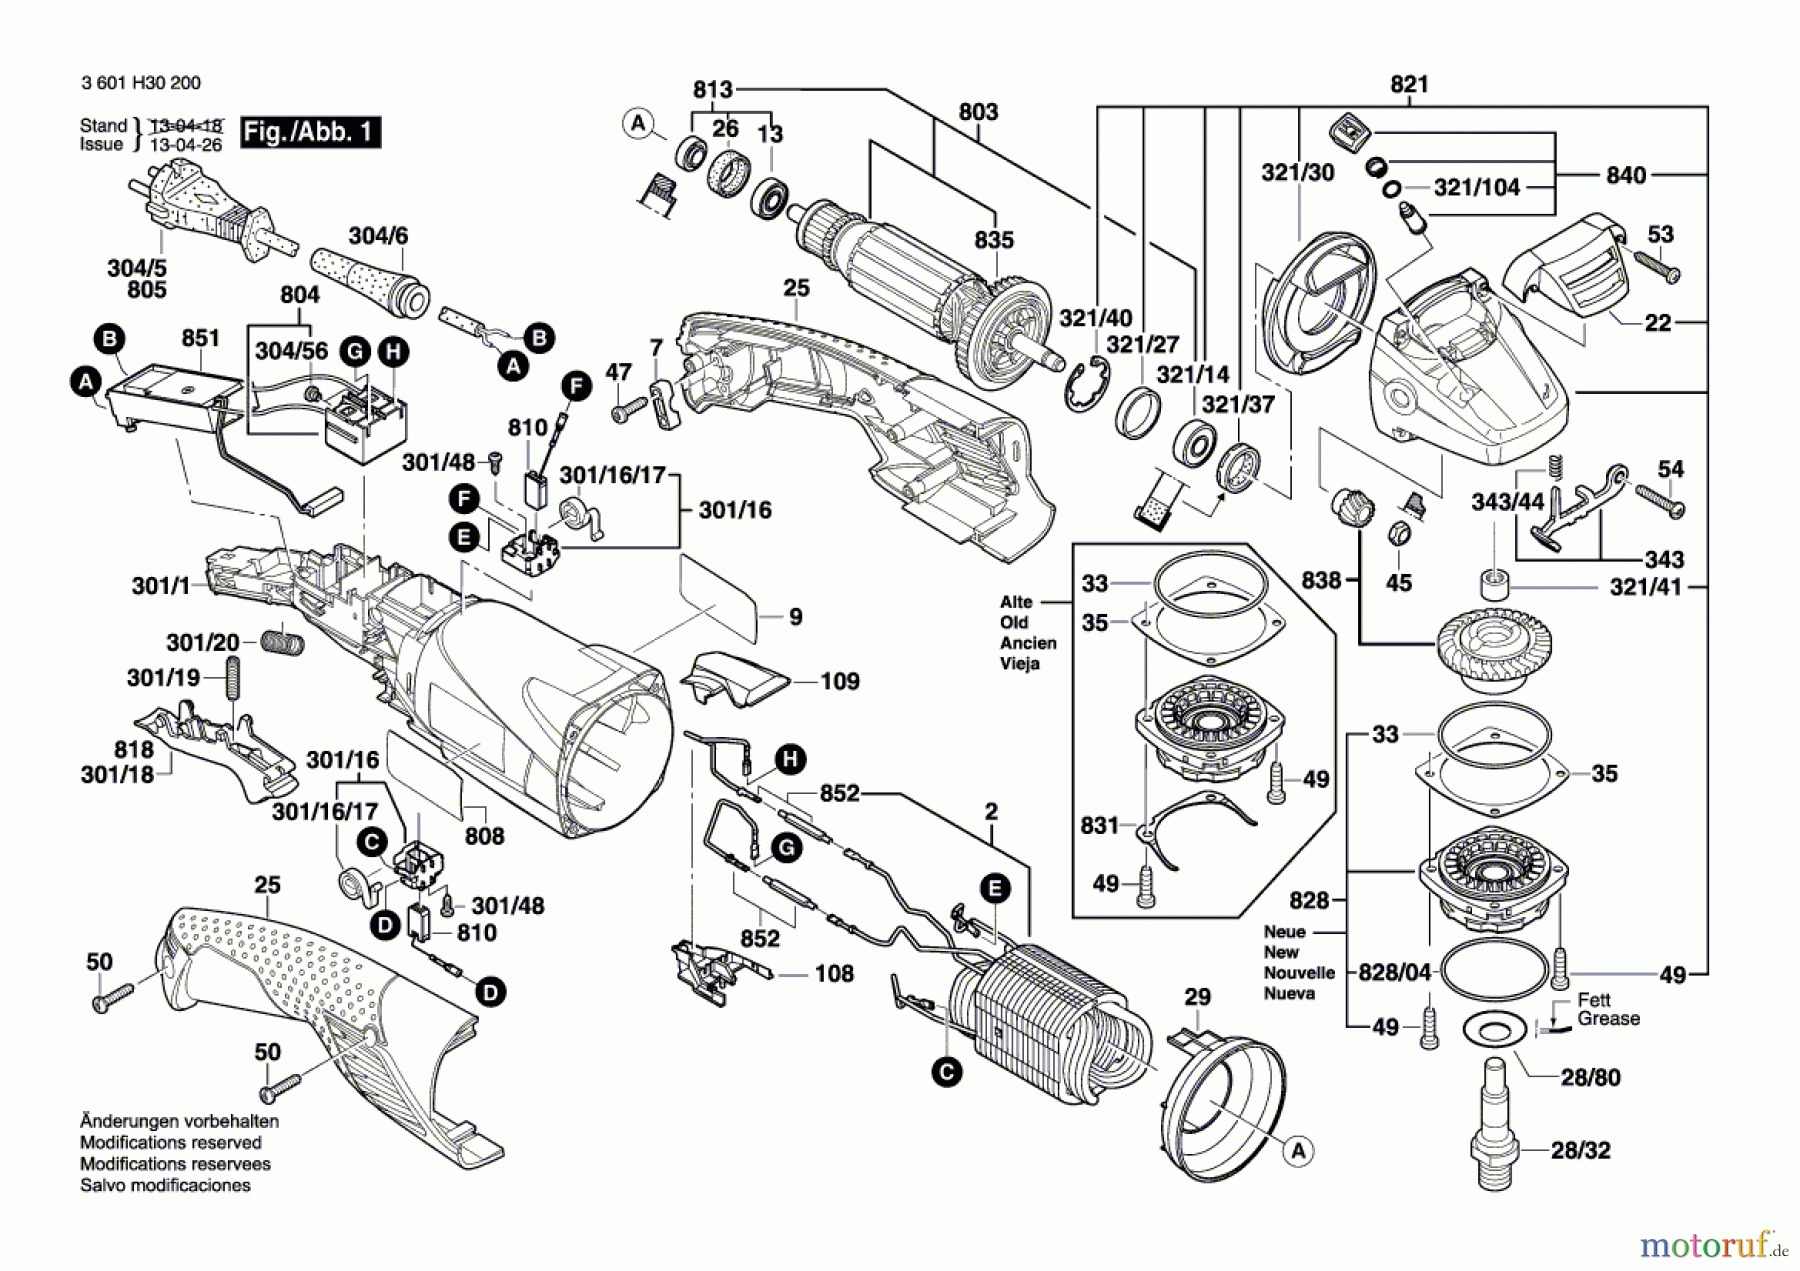  Bosch Werkzeug Winkelschleifer GWS 15-150 CIH Seite 1